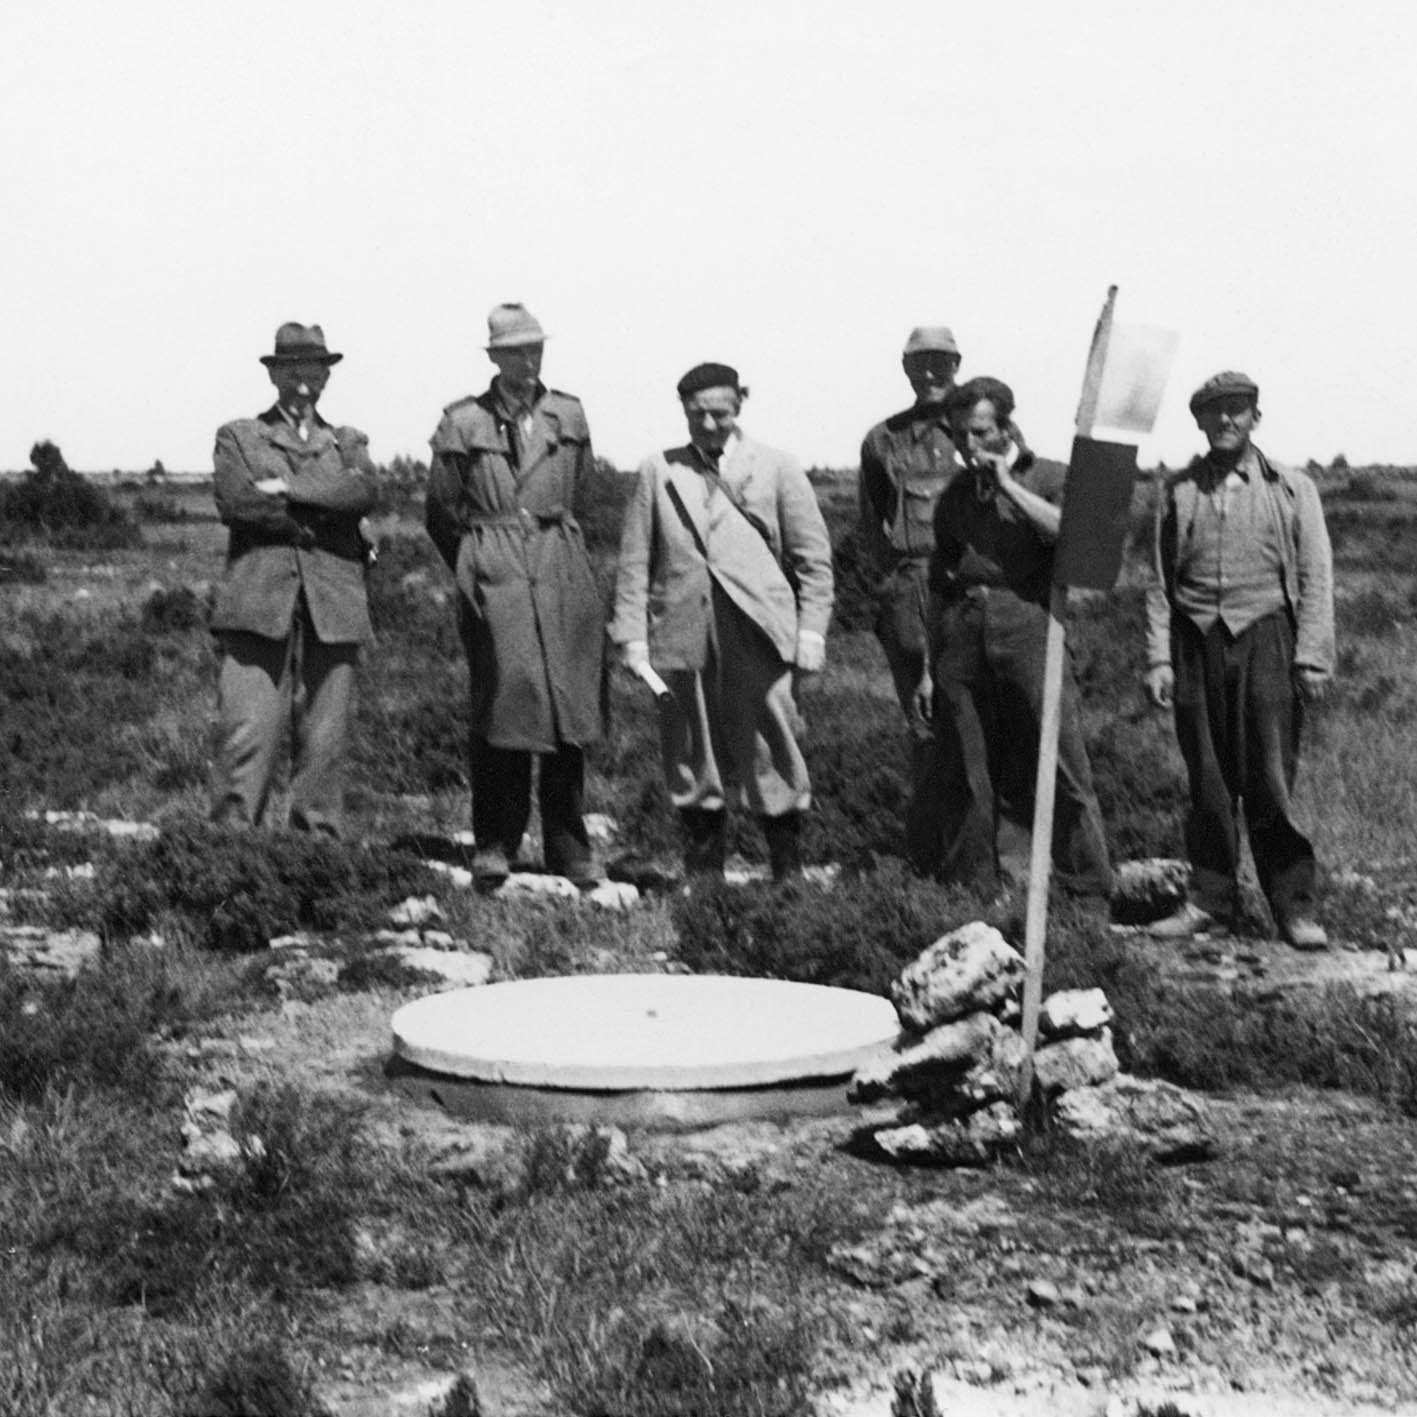 Inspektion 1955: Landsantikvarie Manne Hofrén (i basker) besöker fältet. Bertil Hallert till vänster, Gösta Jansson till höger (ägare till Stora Rörs Cementindustri som lägger ut locken). Bildägare: Gösta Jansson.